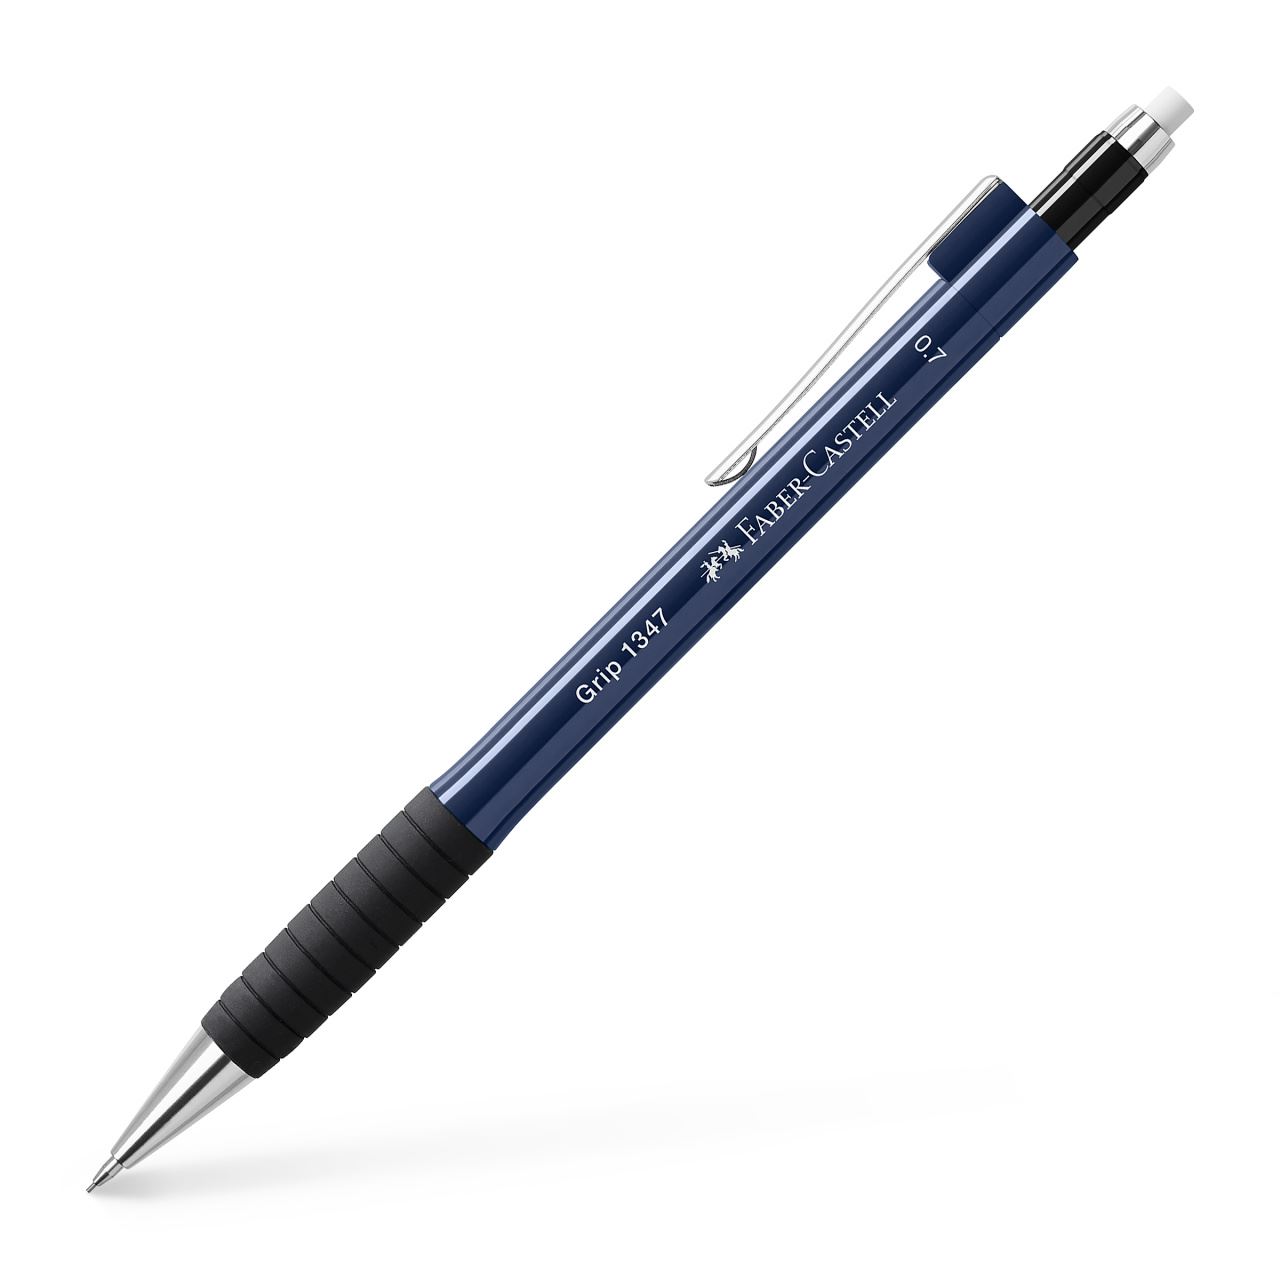 Faber-Castell - Grip 1347 mechanical pencil, 0.7 mm, blue metallic